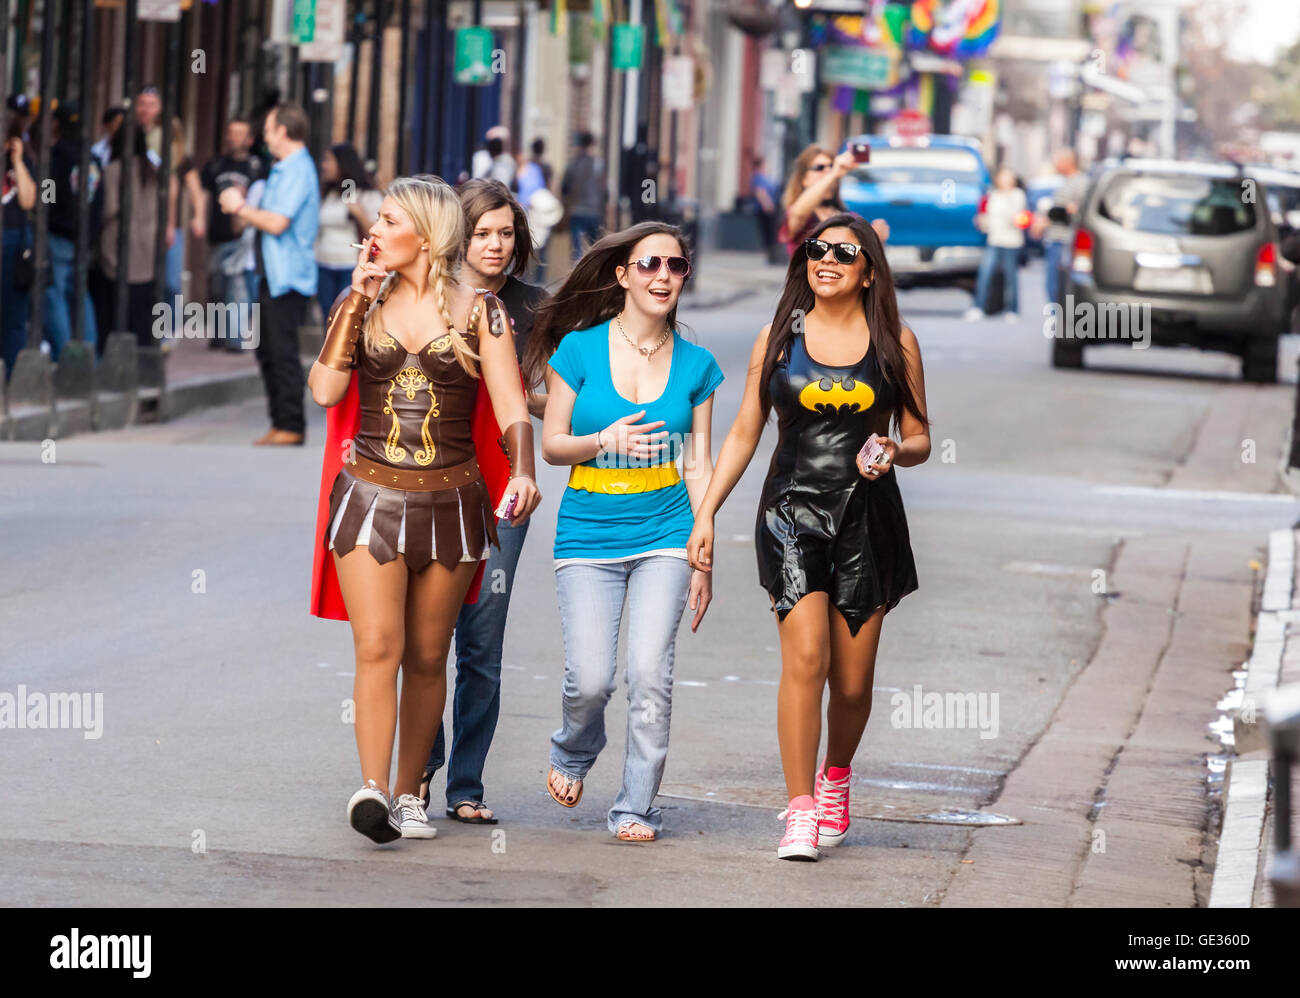 Les femmes portant des costumes amusants célébrant célèbre carnaval Mardi Gras dans les rues de quartier français. Banque D'Images